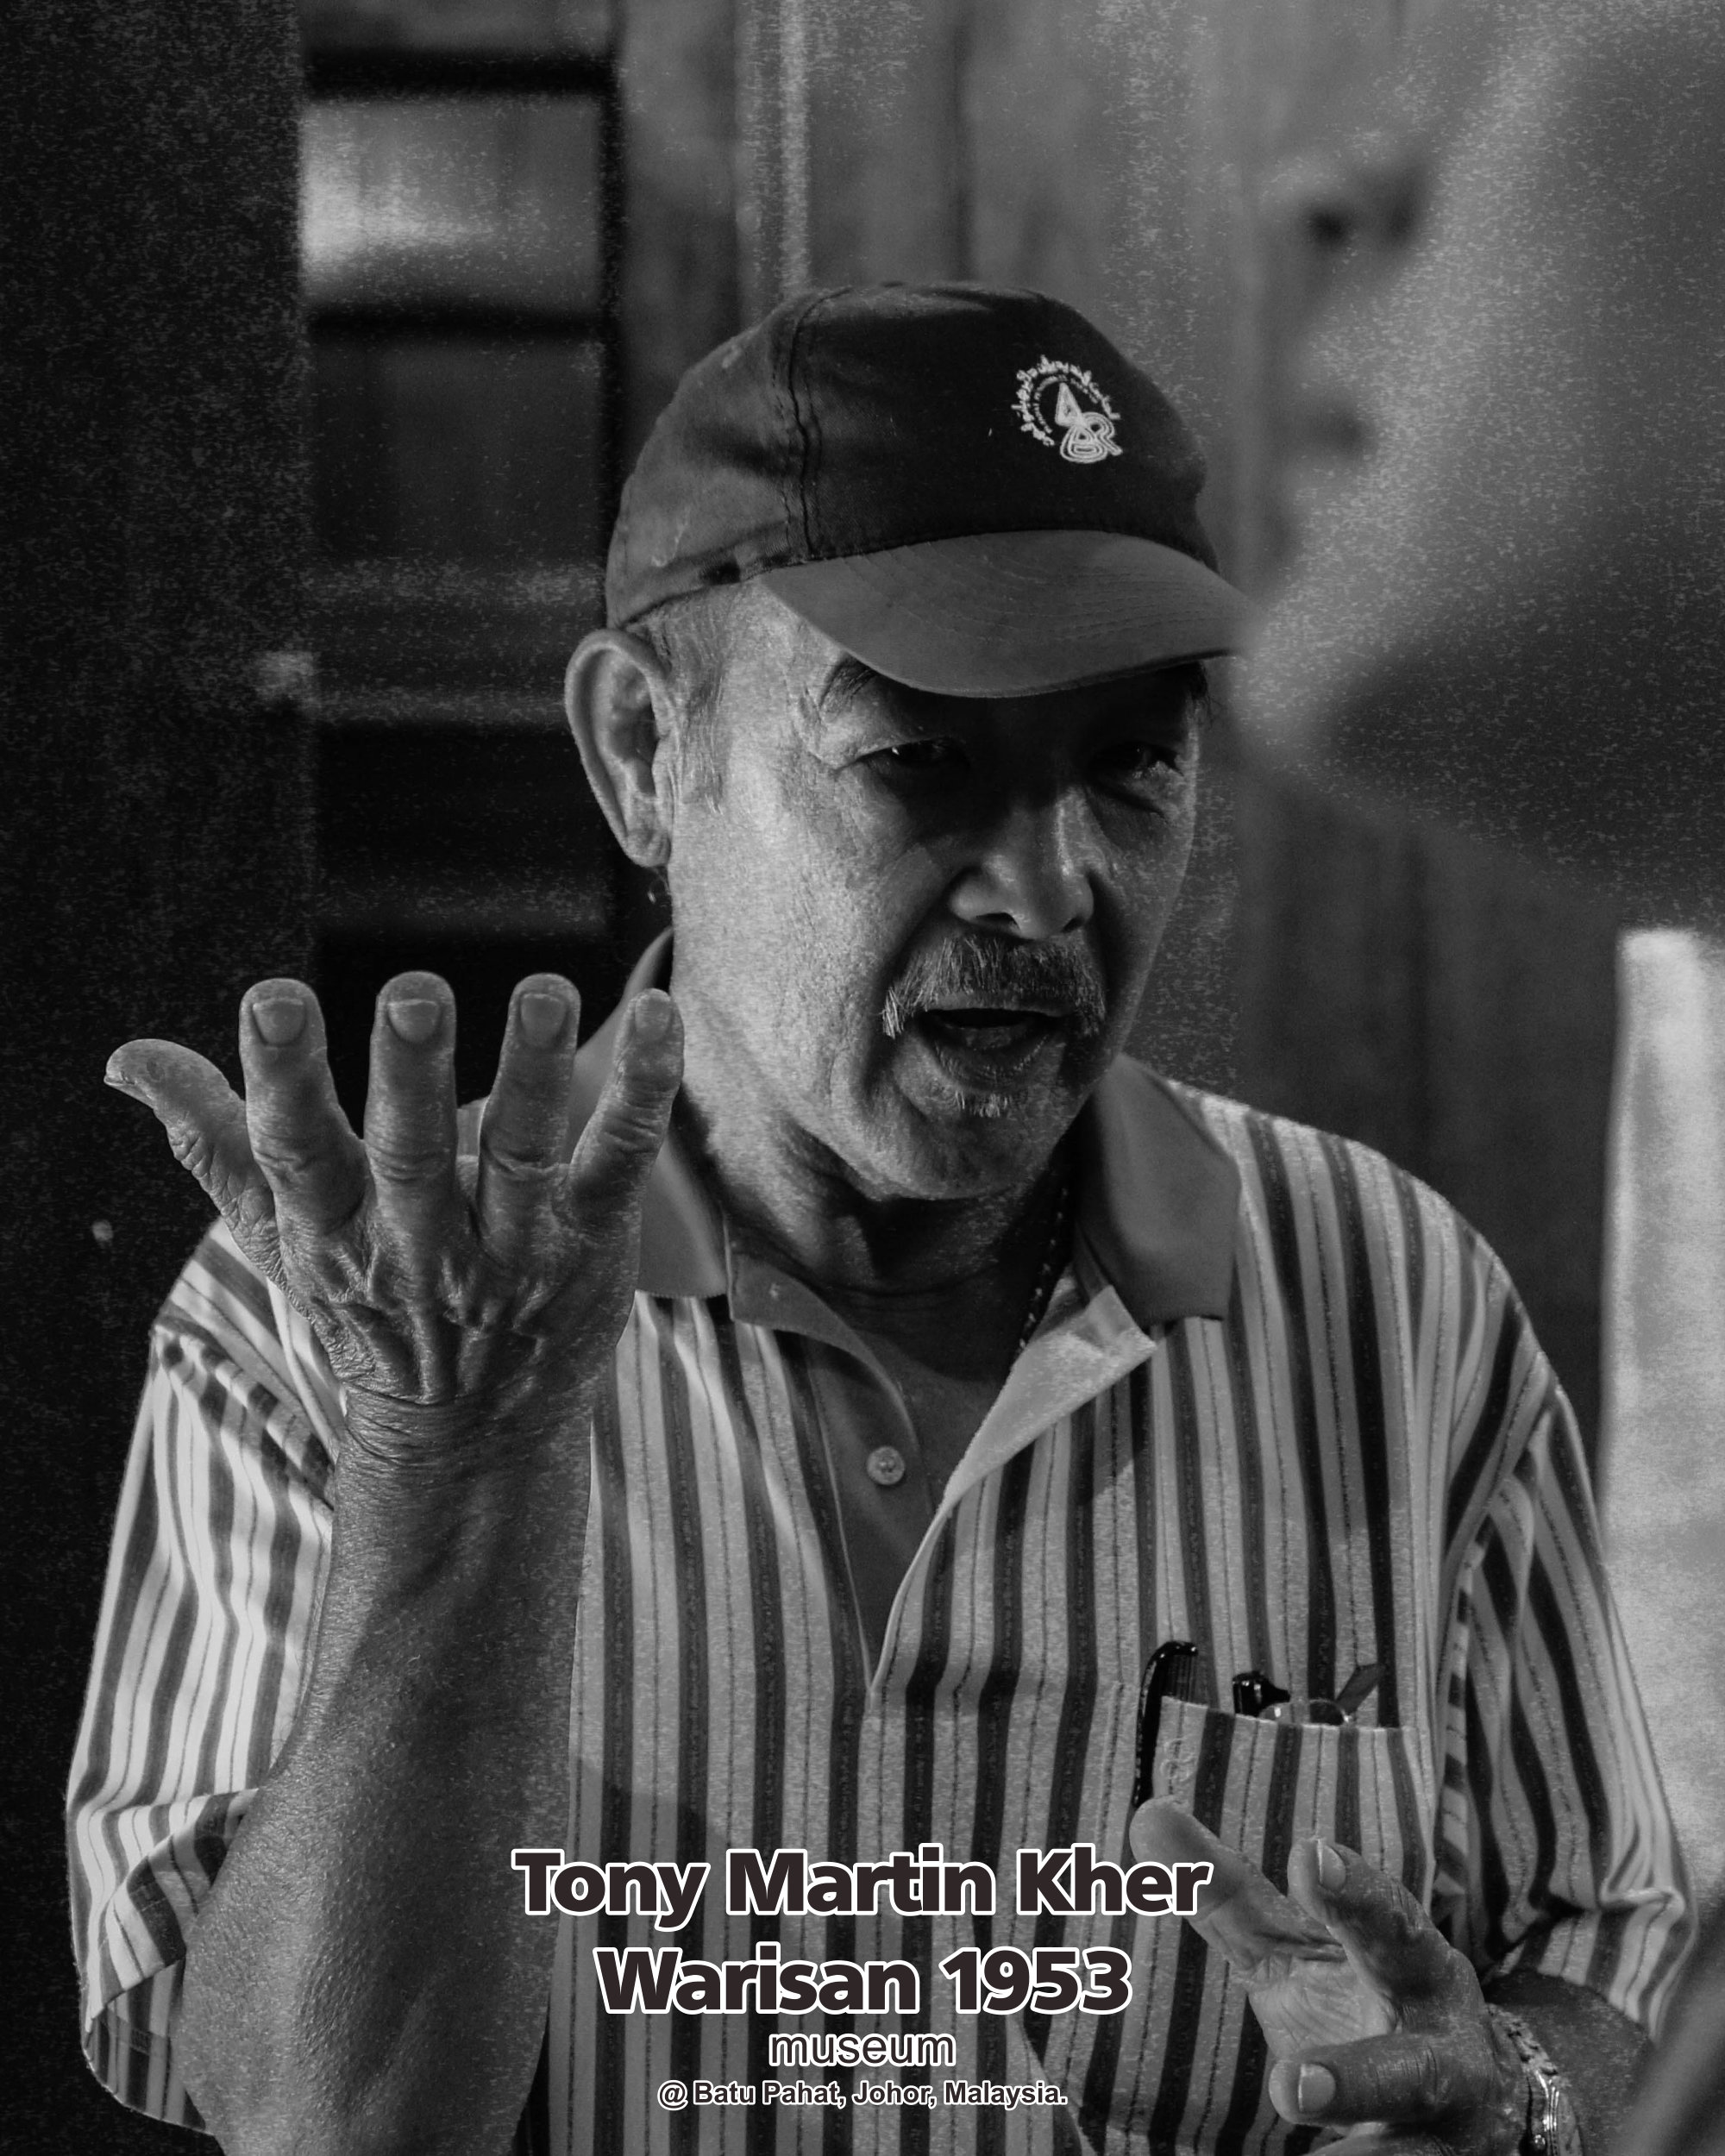 Tony Martin Kher founder of Warisan 1953 Museum at Batu Pahat Johor Malaysia Heritage 1953 Artist Joey Kher A11